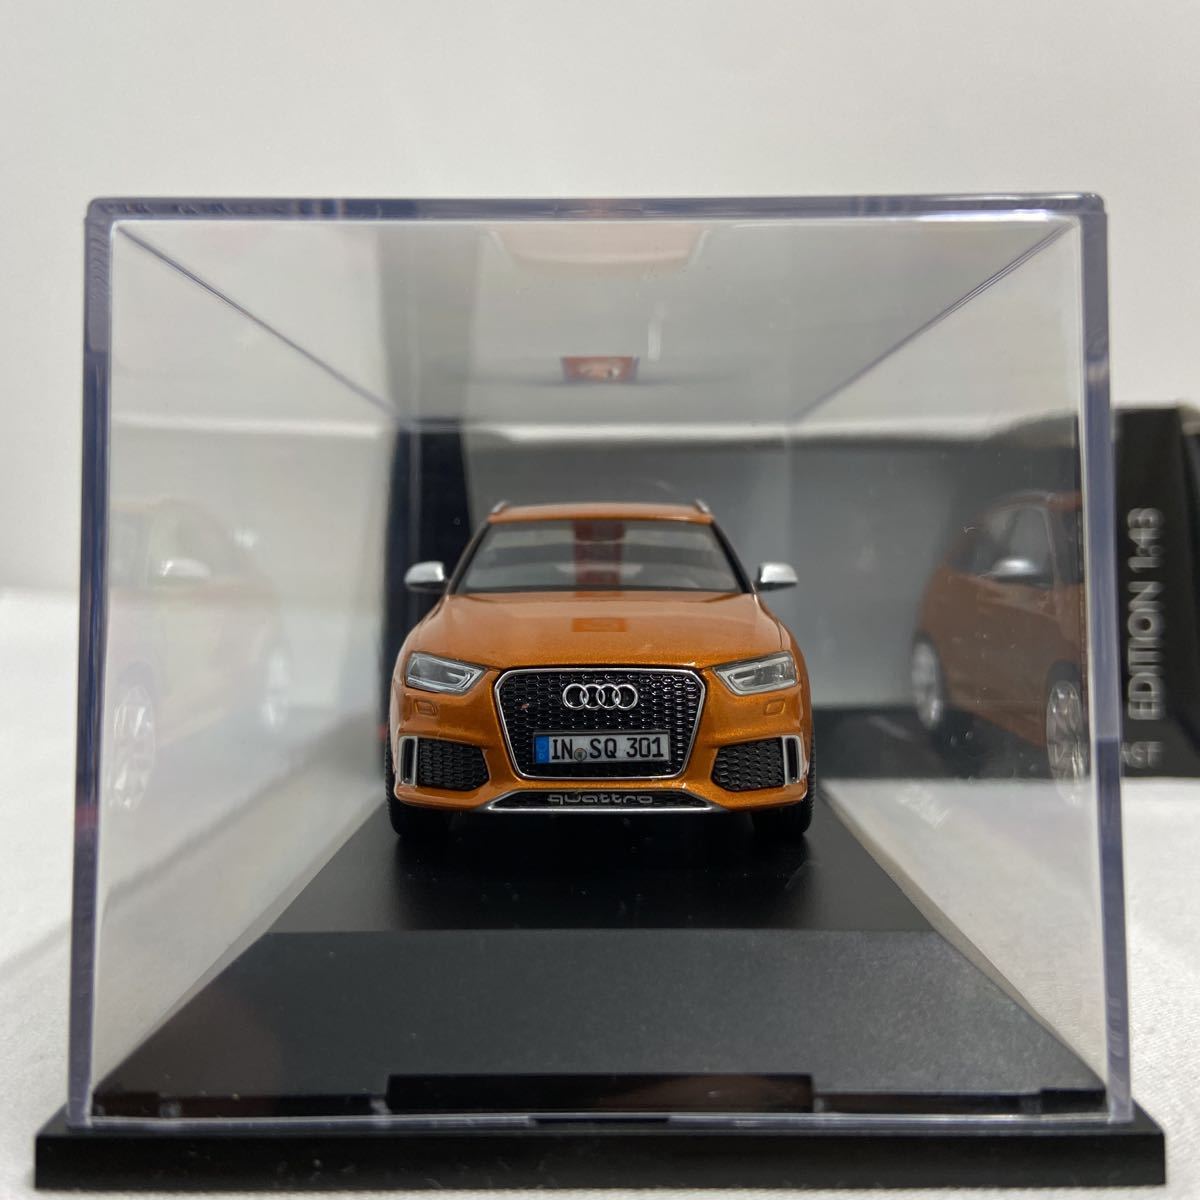 Schuco Limited Edition 1/43 Audi RS Q3 samoa orange シュコー アウディ サモアオレンジ 限定 ミニカー モデルカー_画像6